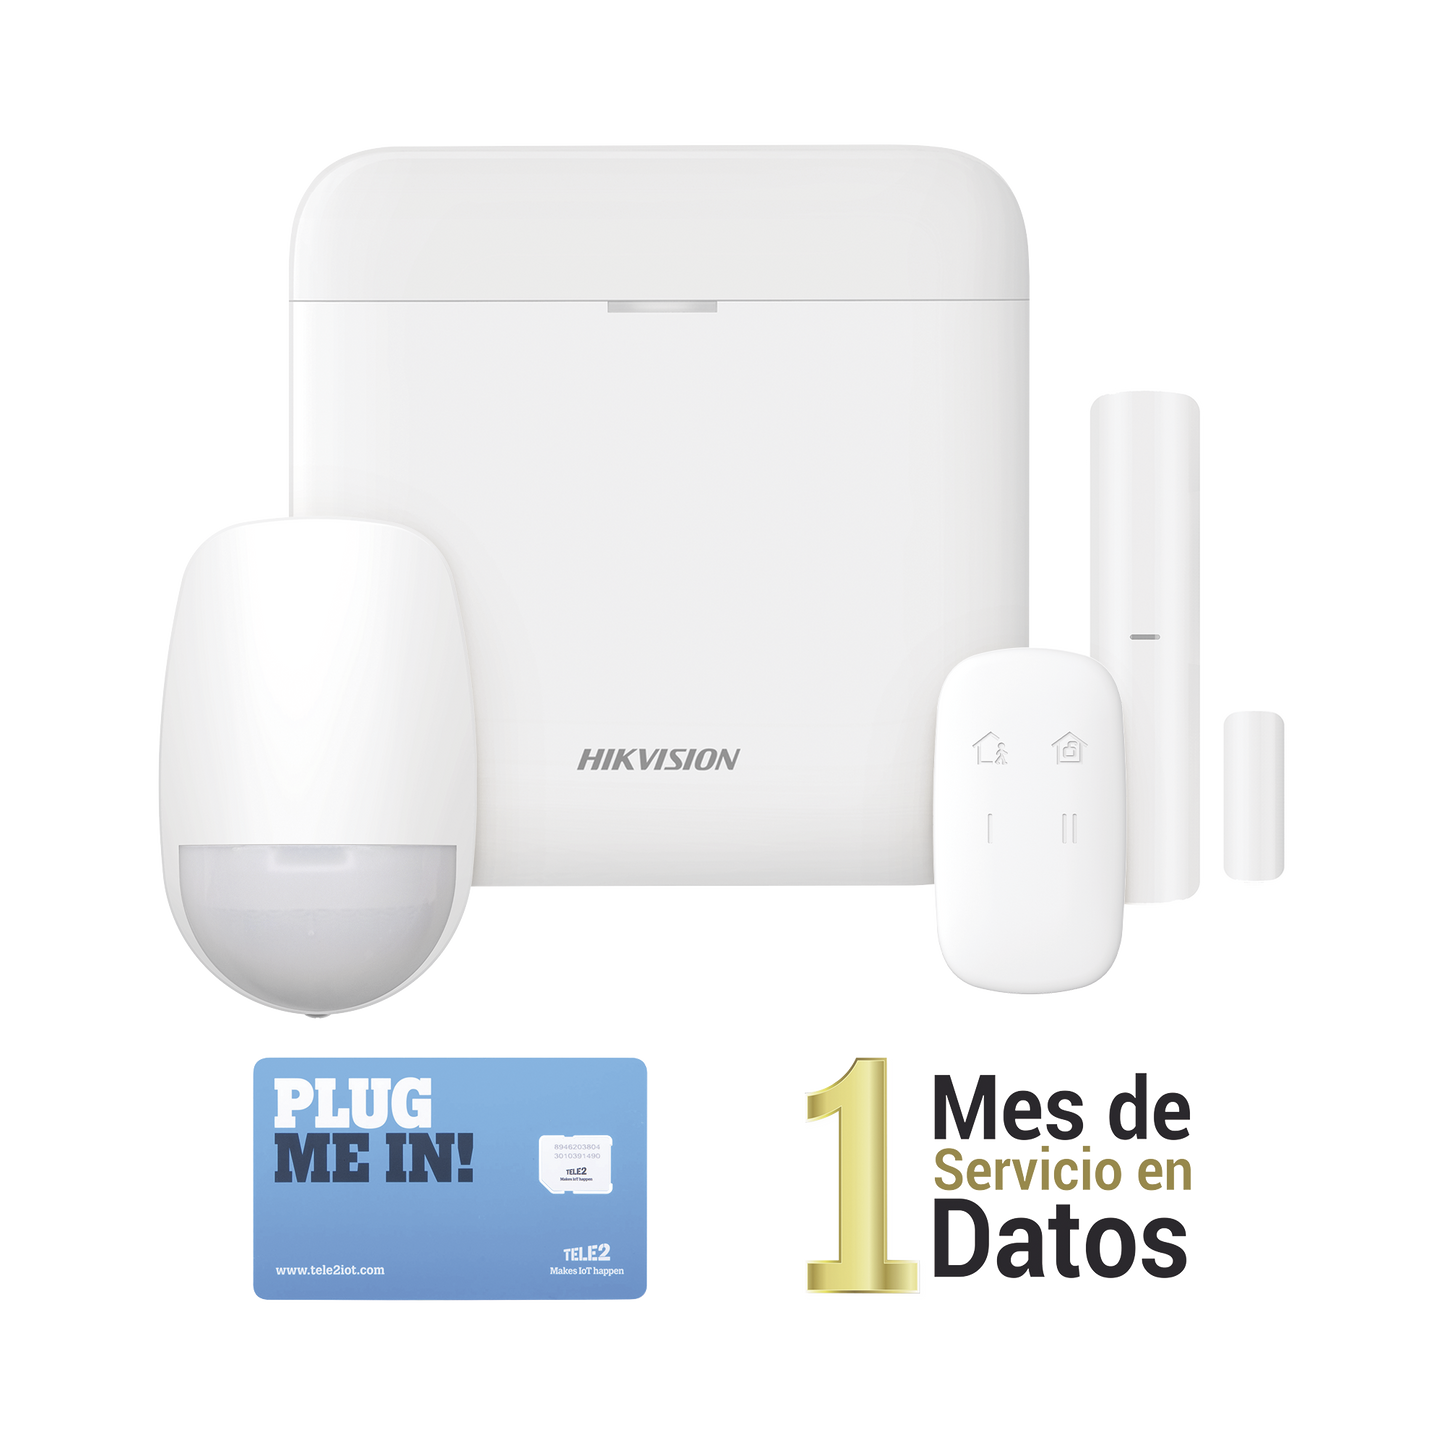 (AX PRO) KIT de Alarma AX PRO con GSM (3G/4G), Incluye: 1 Hub con bateria de respaldo, 1 Sensor PIR, 1 Contacto Magnético, 1 Control Remoto,1 MICROSIM30M2M incluye 1 mes de servicio/ Wi-Fi, Compatible con Hik-Connect P2P